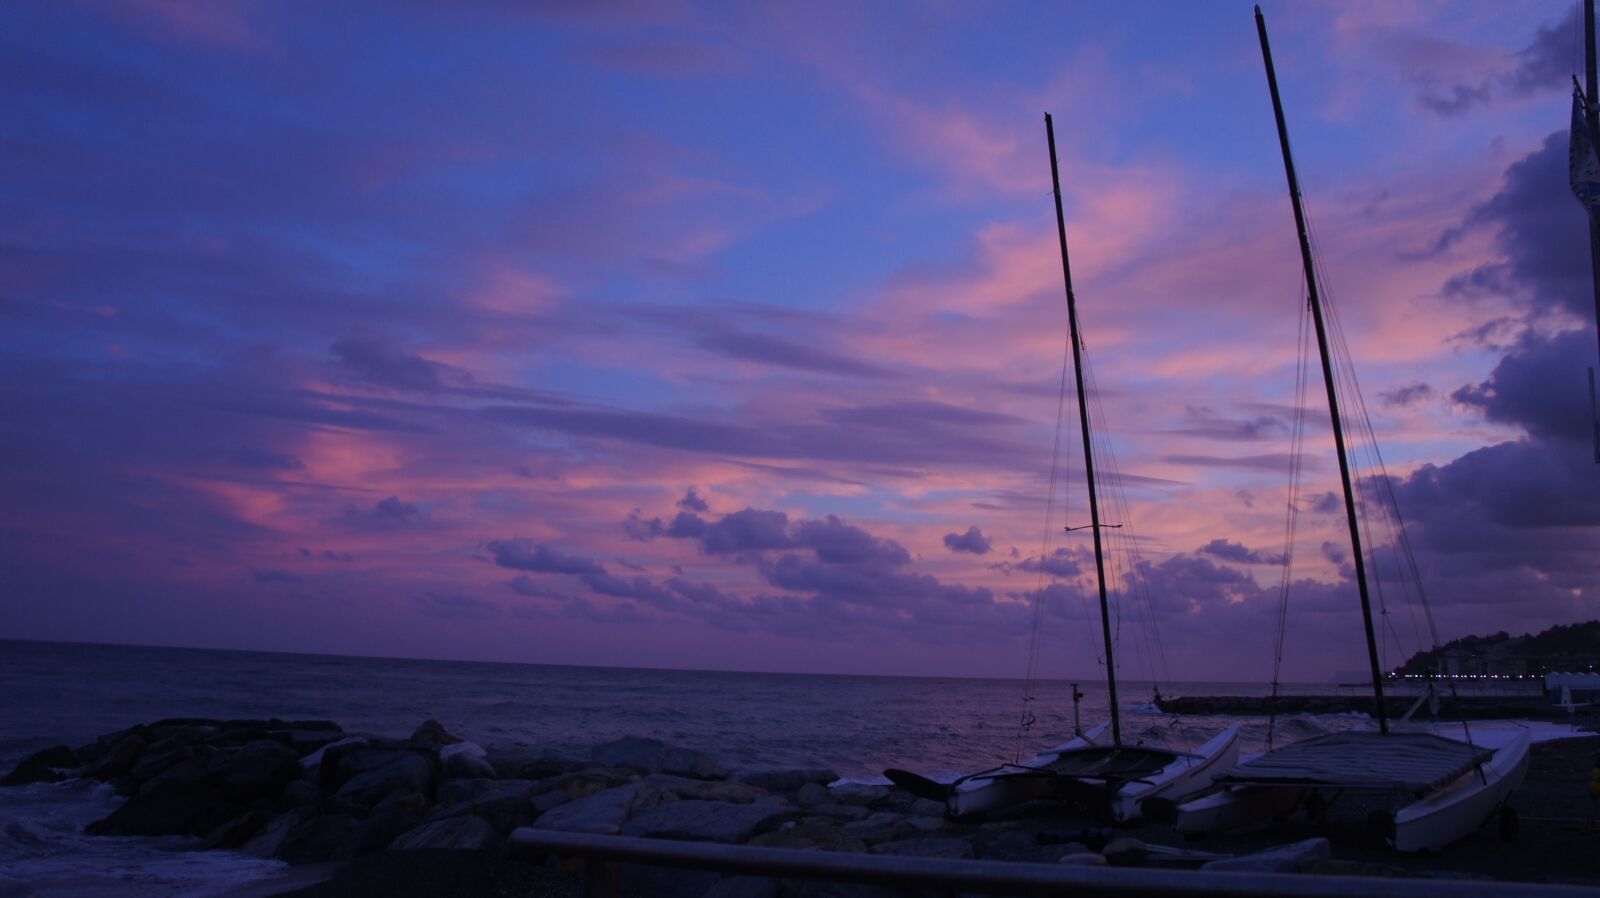 Sony Alpha NEX-5 + Sony E 18-200mm F3.5-6.3 OSS sample photo. Sunset, boats, sailboats photography